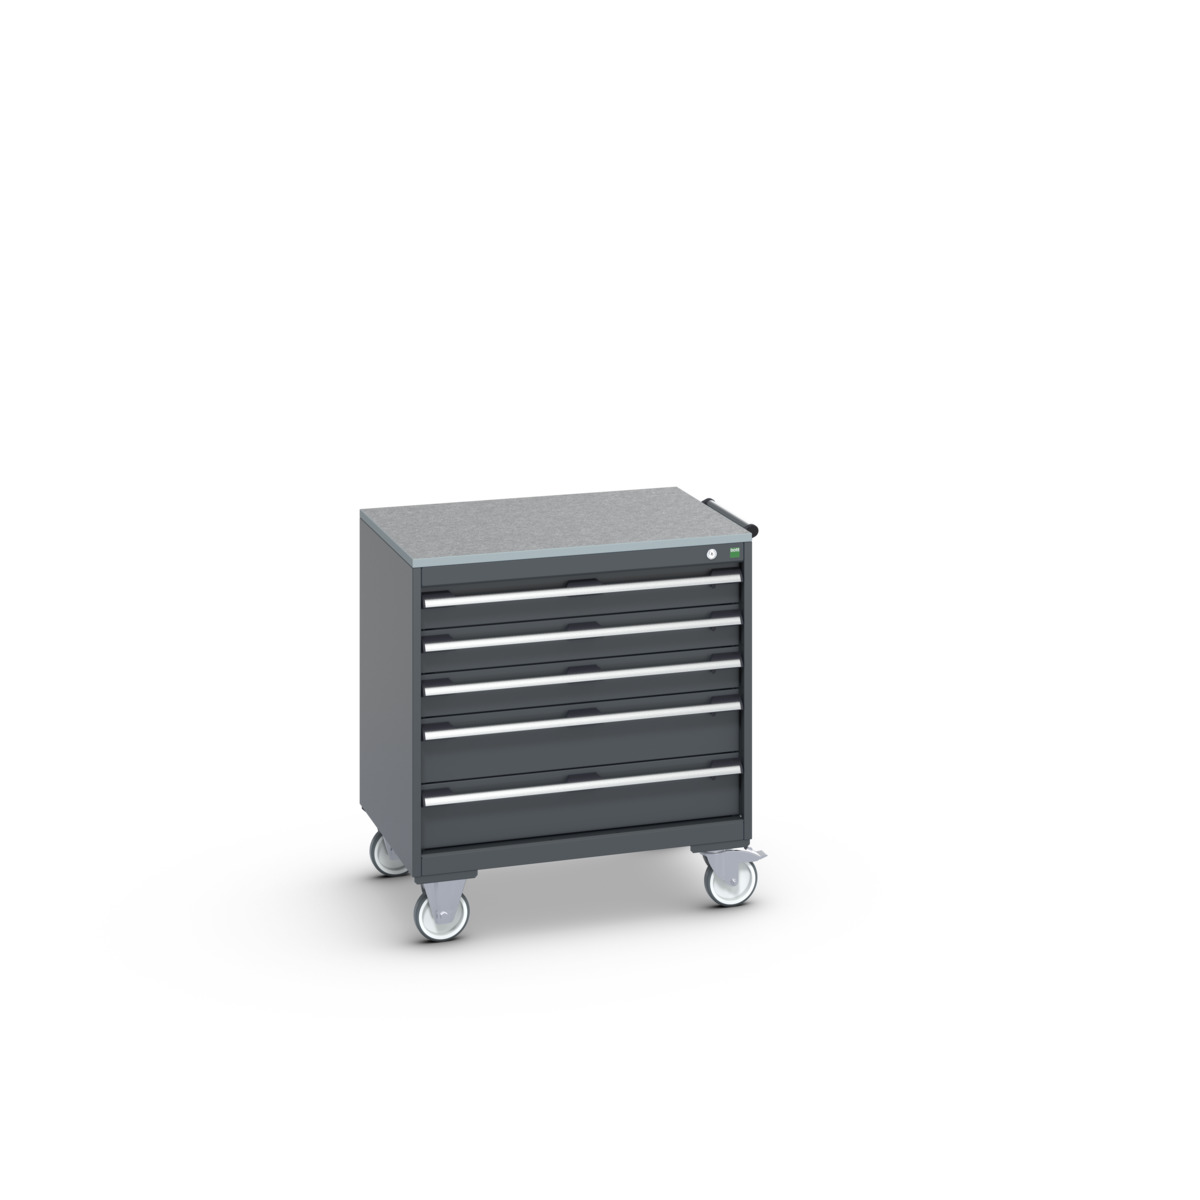 40402156.77V - cubio mobile cabinet